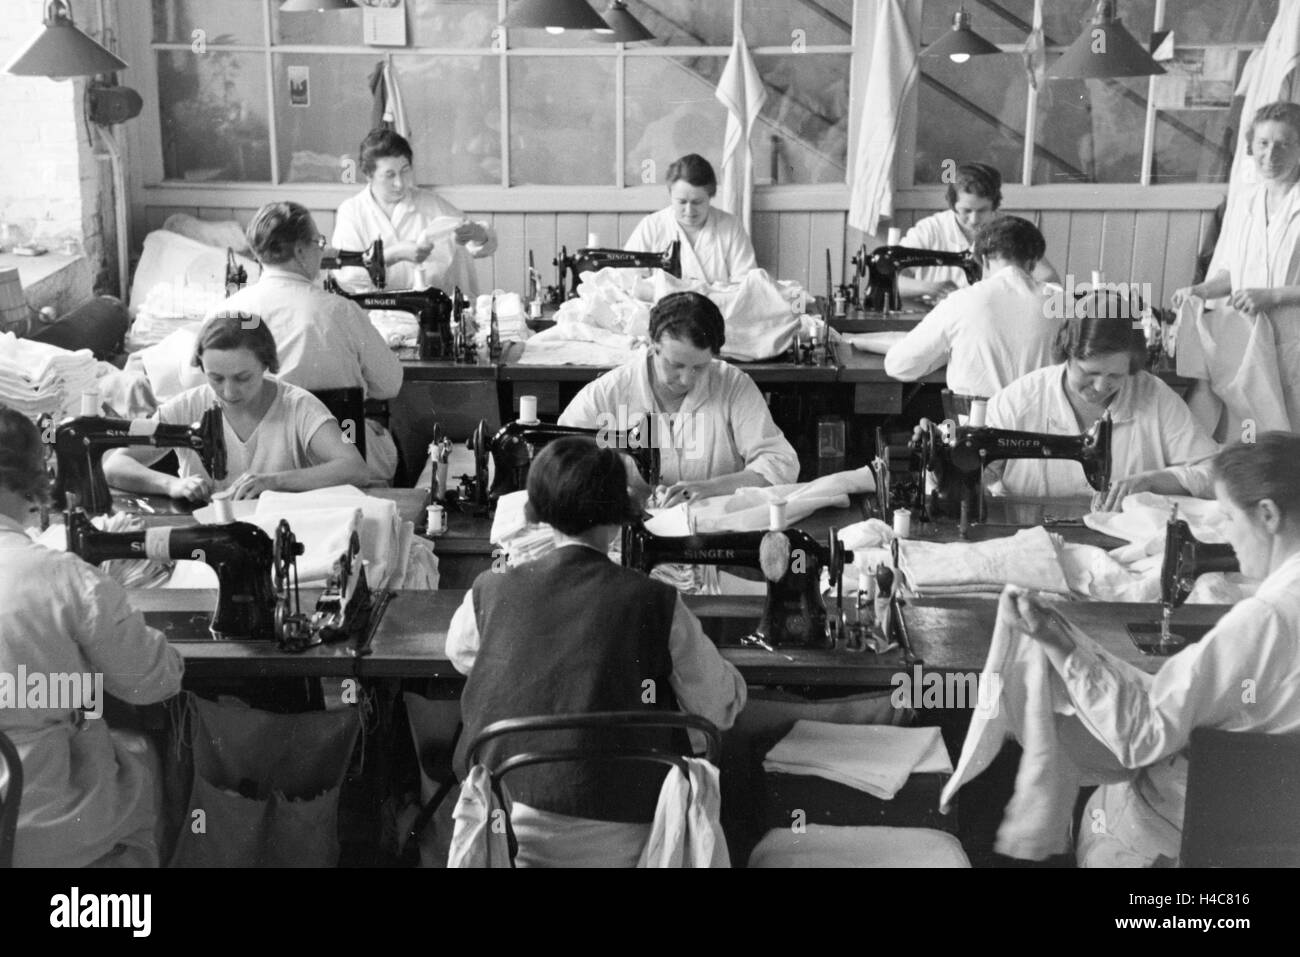 Näherinnen der Mitropa bei der Herstellung der Mitropa Reisekissen, Deutschland 1930er Jahre. Female staff members sewing Mitropa travel pillows, Germany 1930s Stock Photo